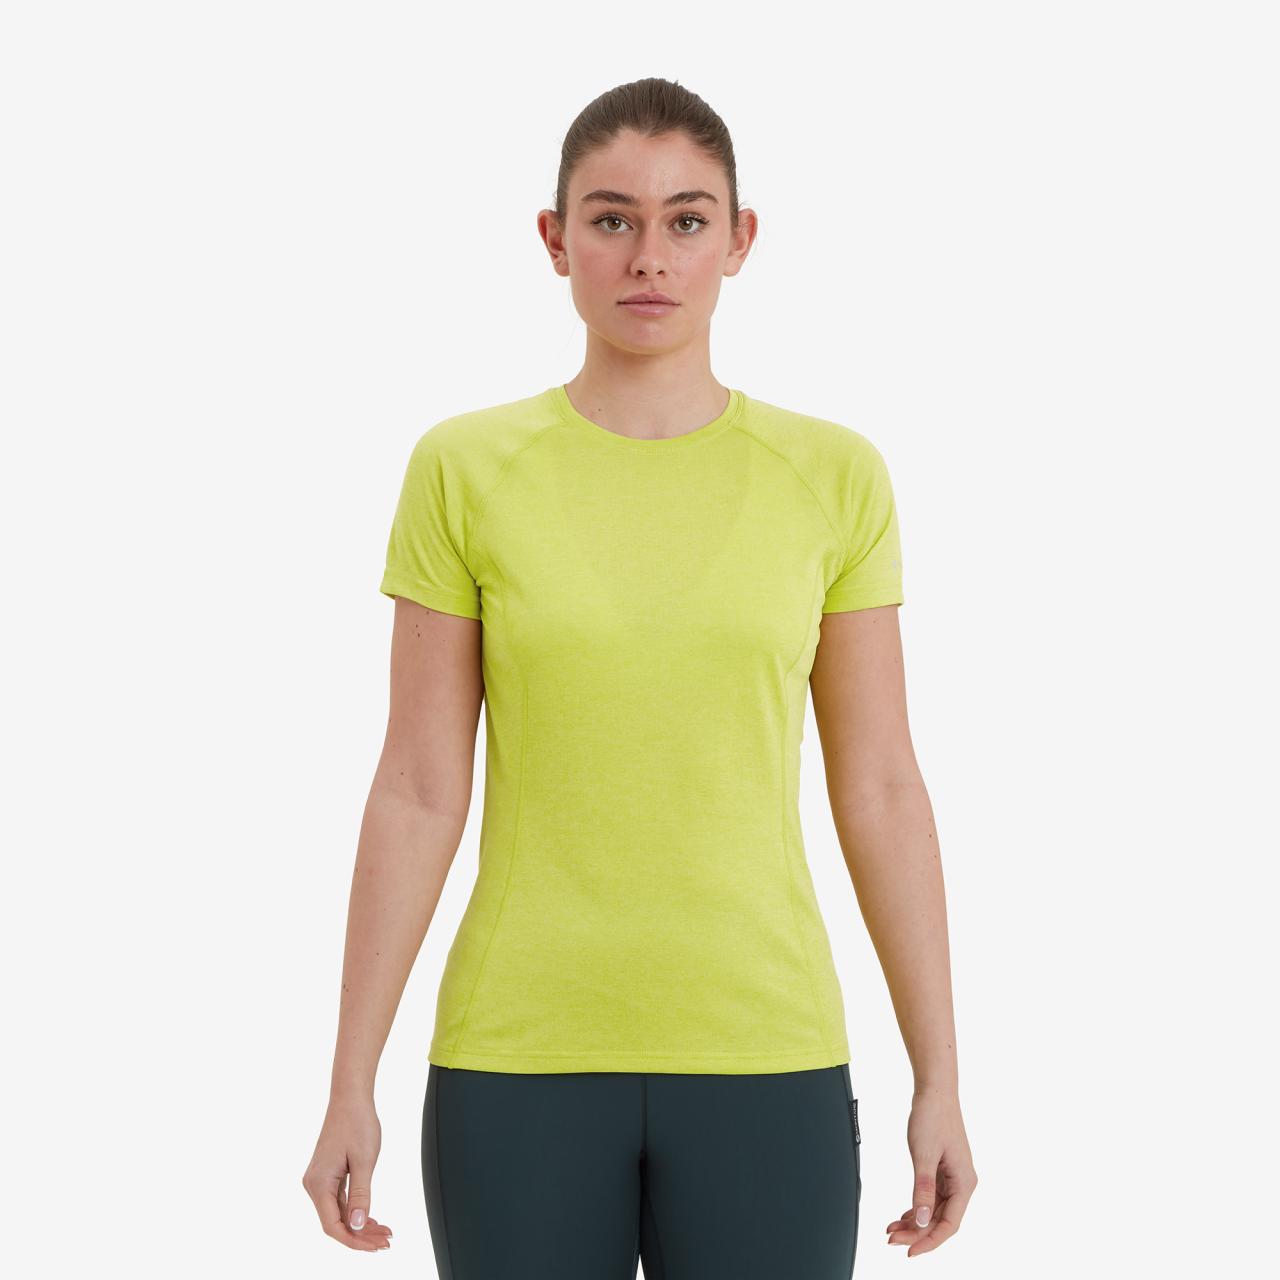 FEM DART T-SHIRT-CITRUS SPRING-UK8/XS dámské triko žlutozelené